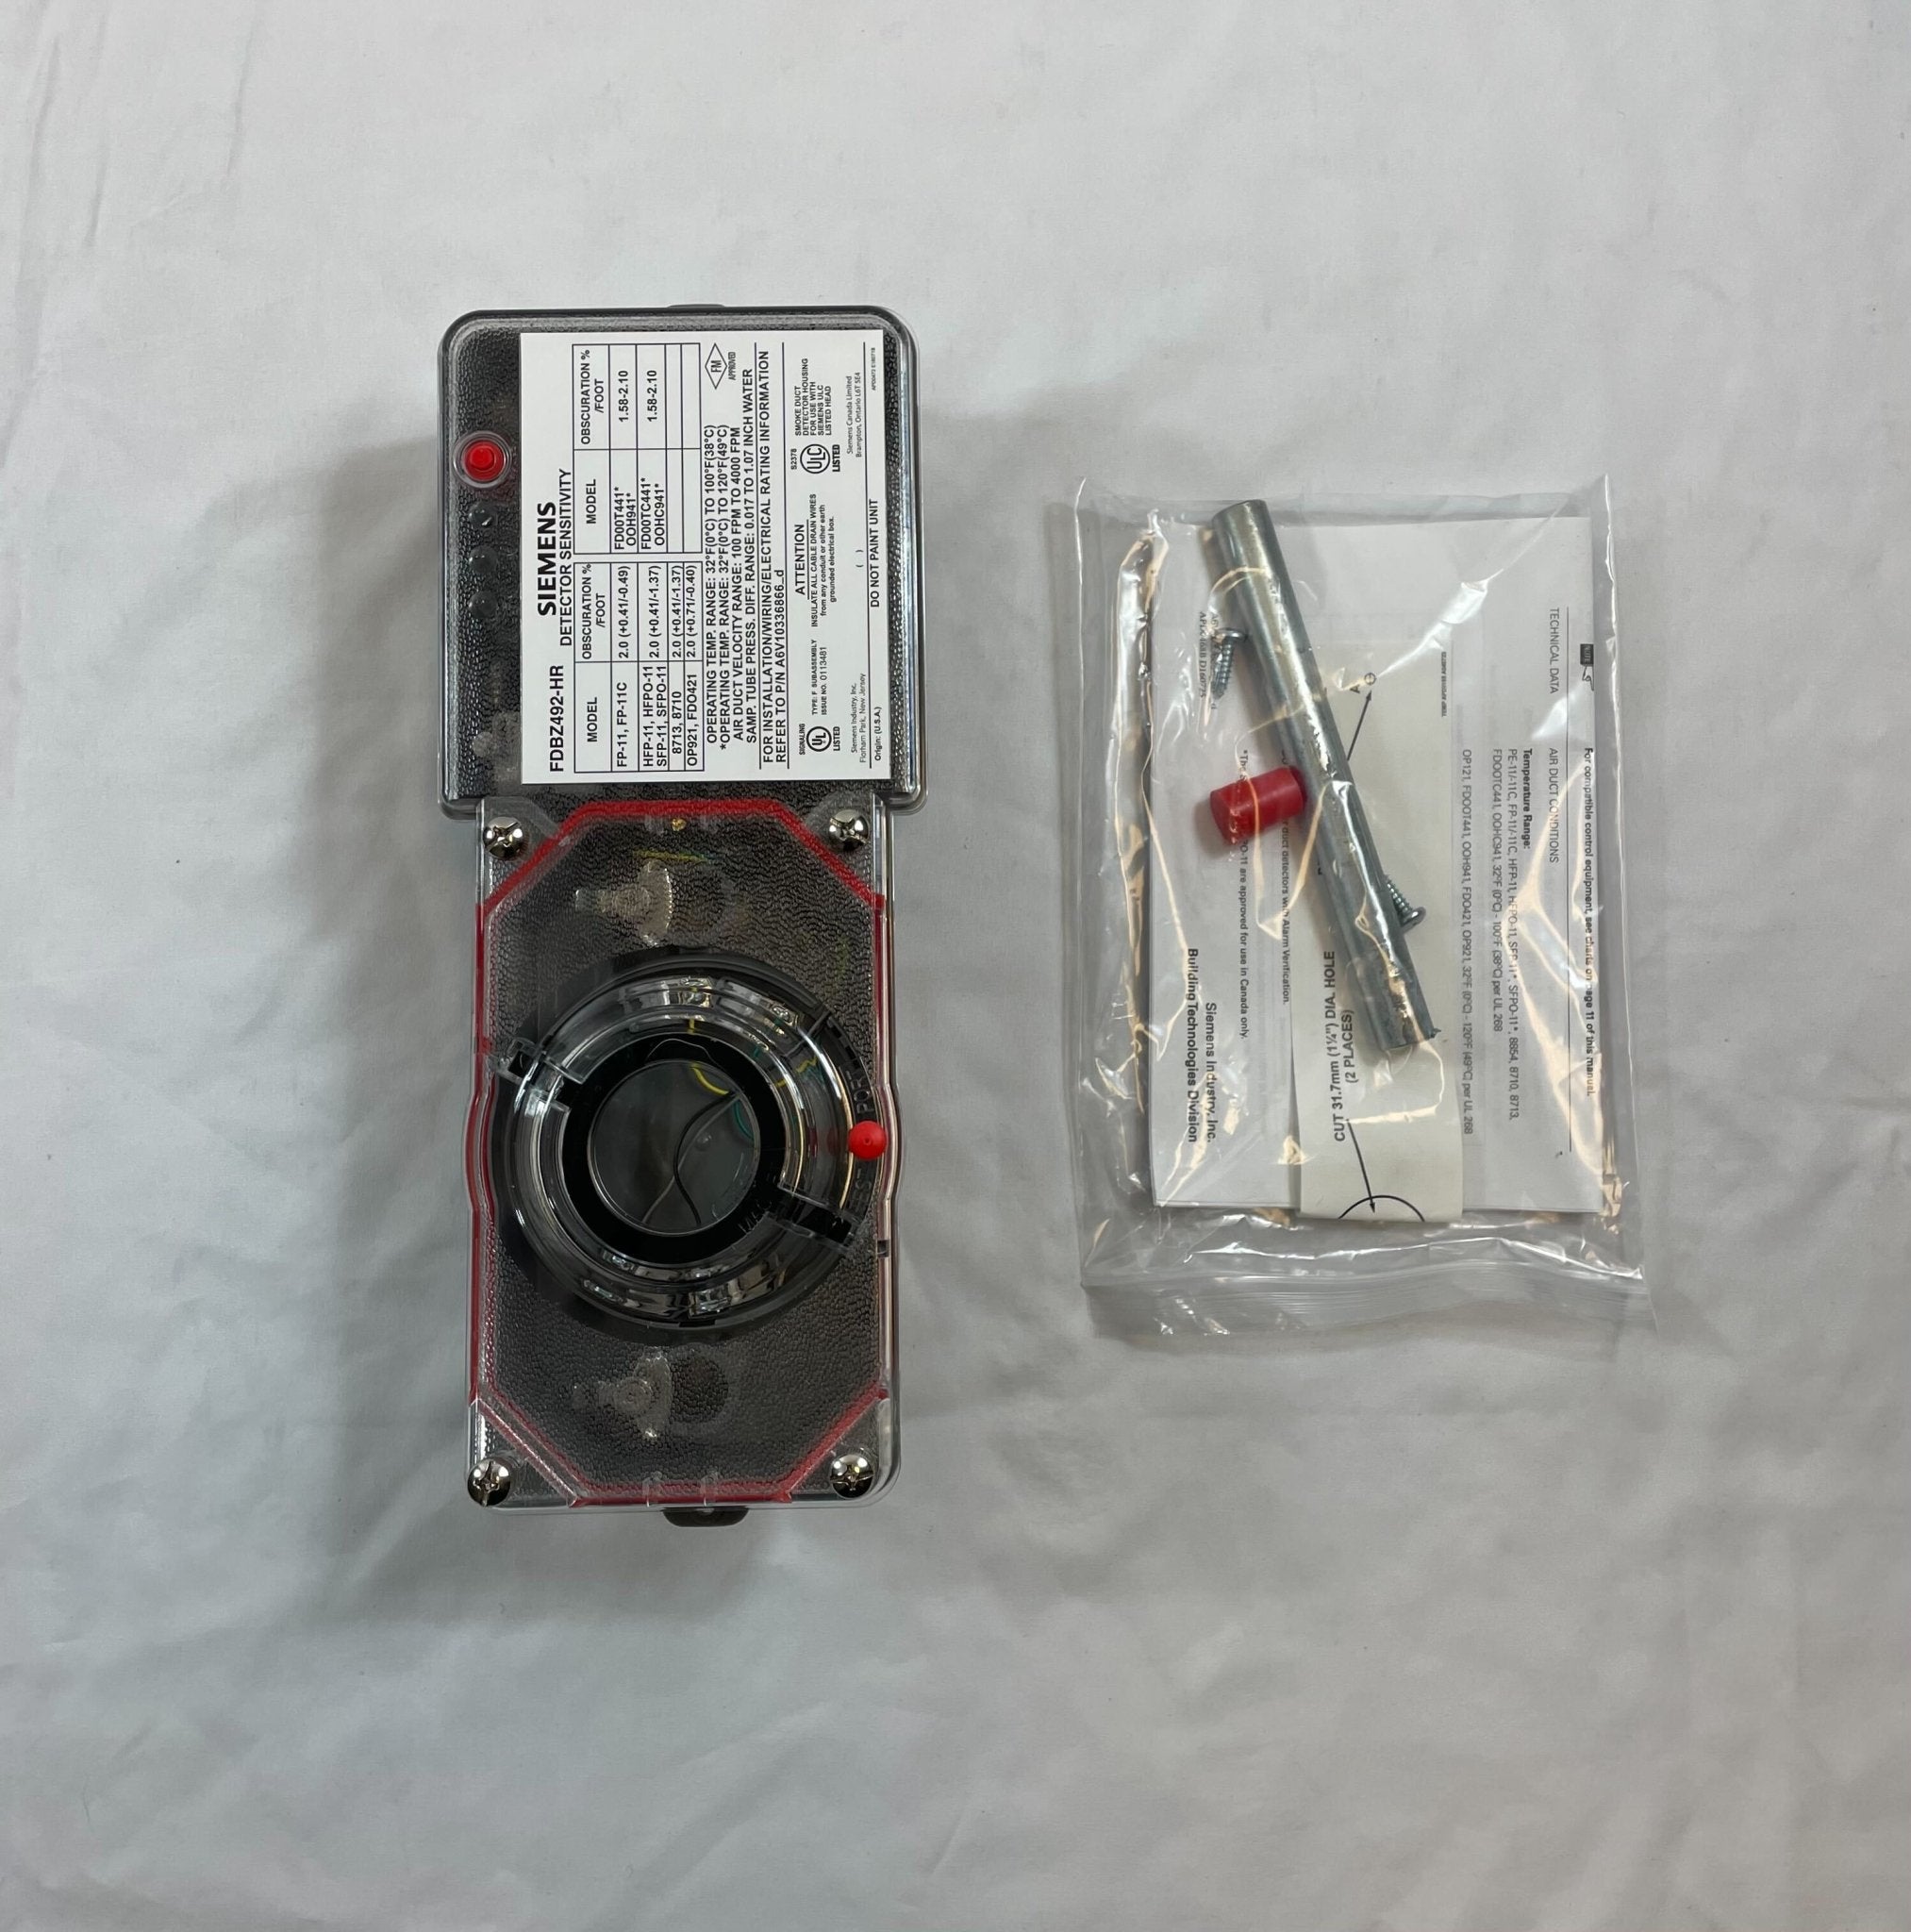 Siemens FDBZ492-HR - The Fire Alarm Supplier